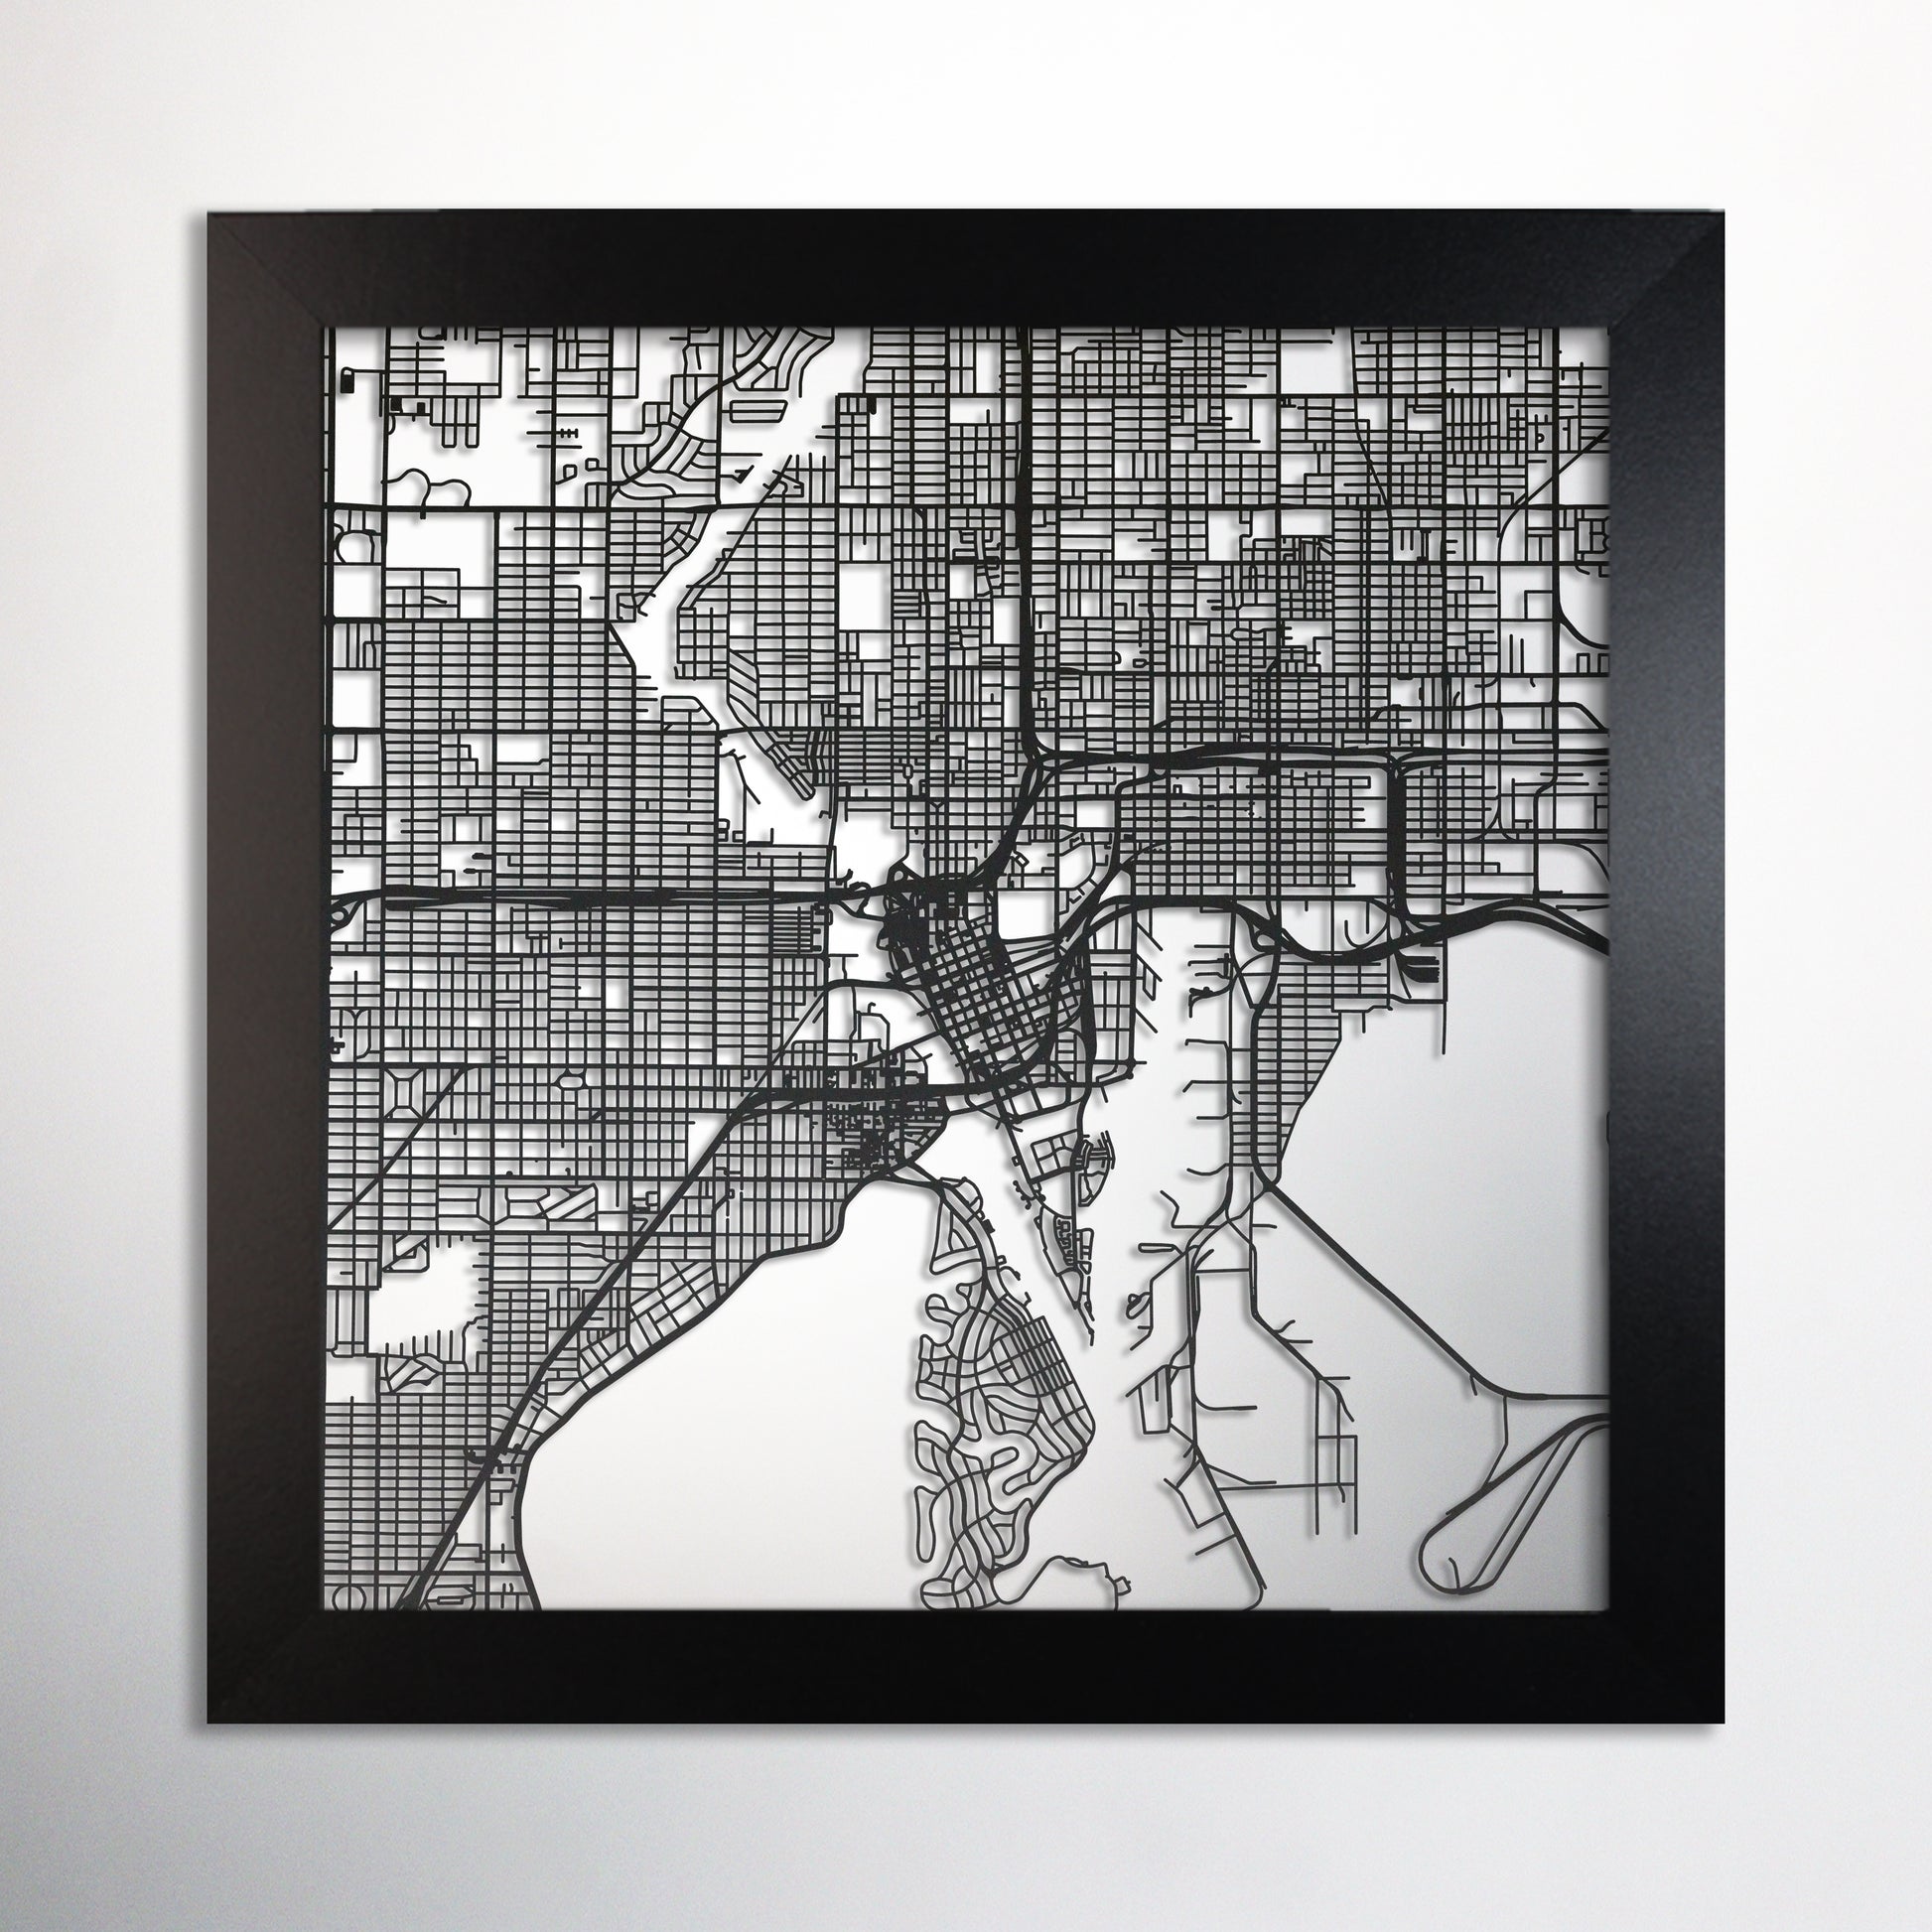 Tampa, FL square frame laser cut map - CarbonLight